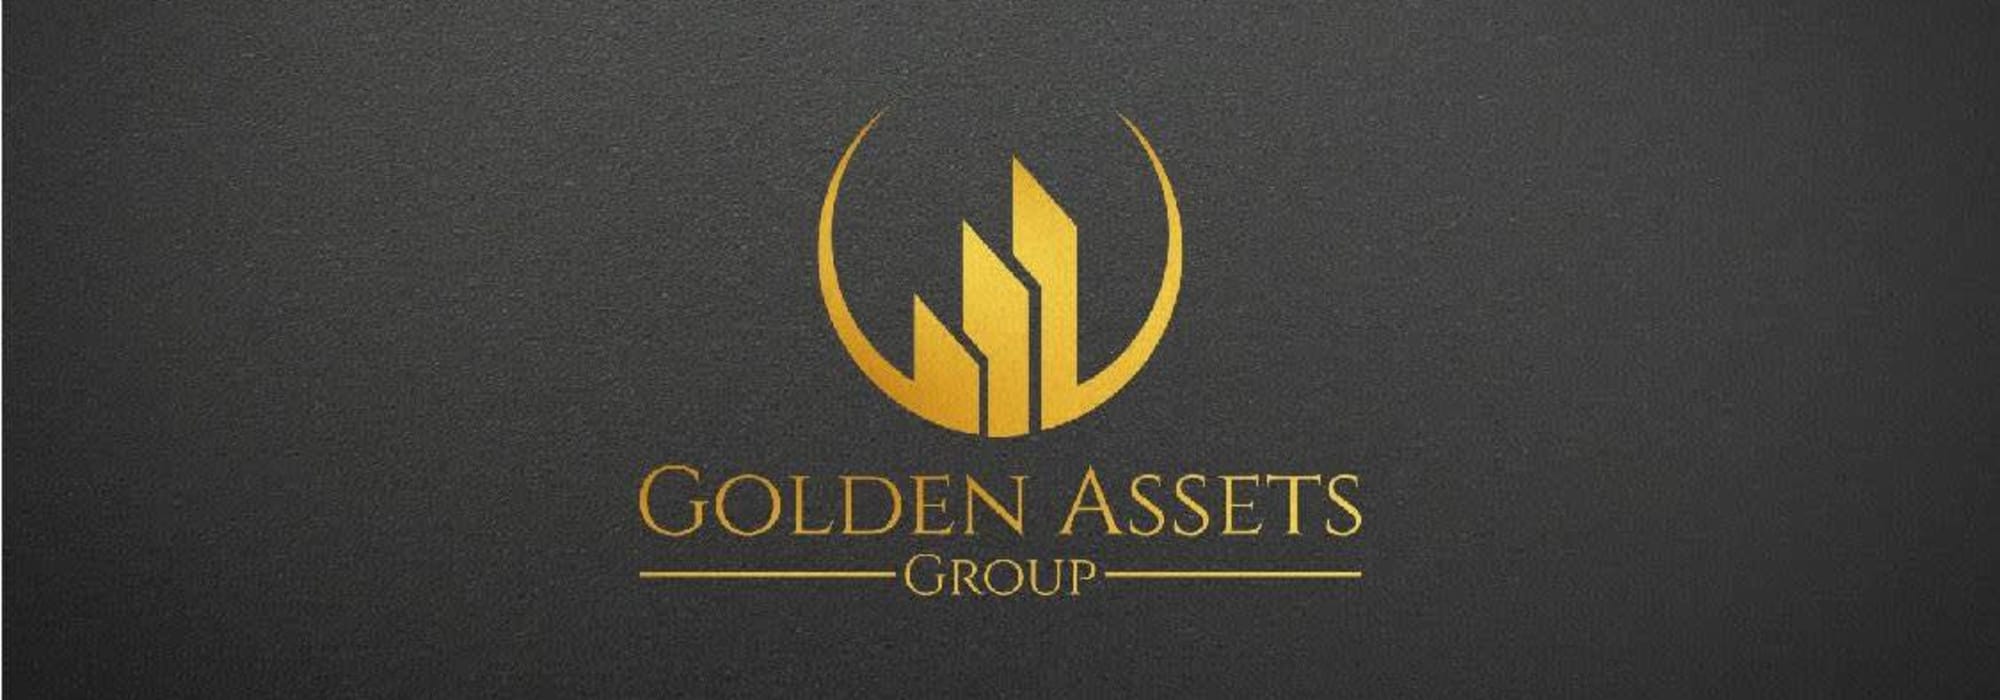 Golden Assets Group